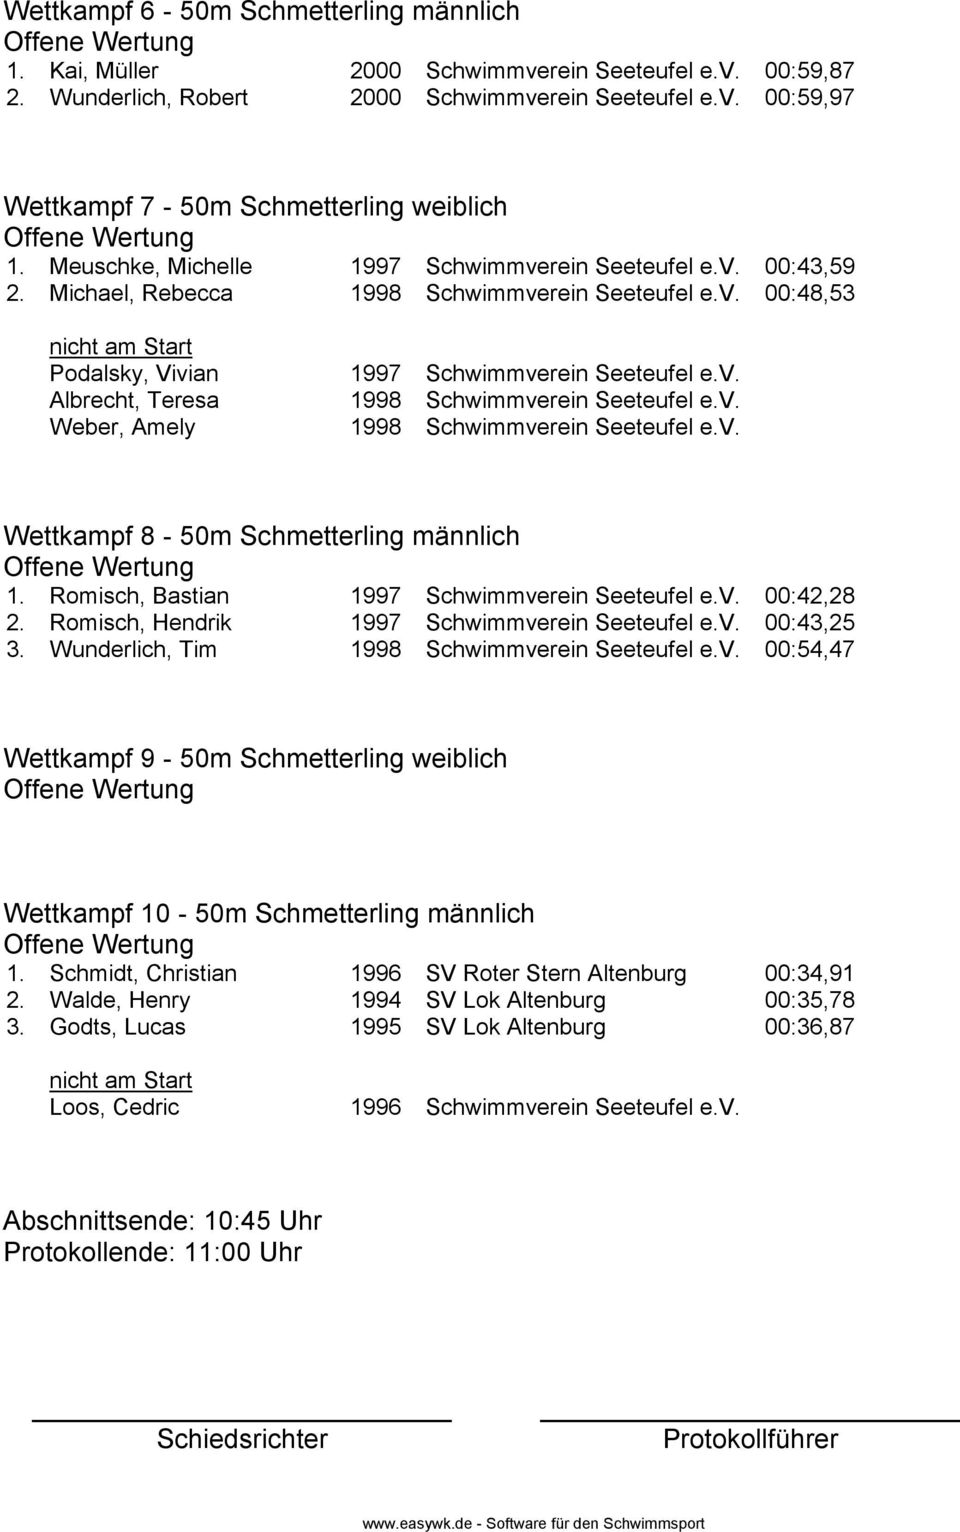 v. Weber, Amely 1998 Schwimmverein Seeteufel e.v. Wettkampf 8-50m Schmetterling männlich 1. Romisch, Bastian 1997 Schwimmverein Seeteufel e.v. 00:42,28 2.